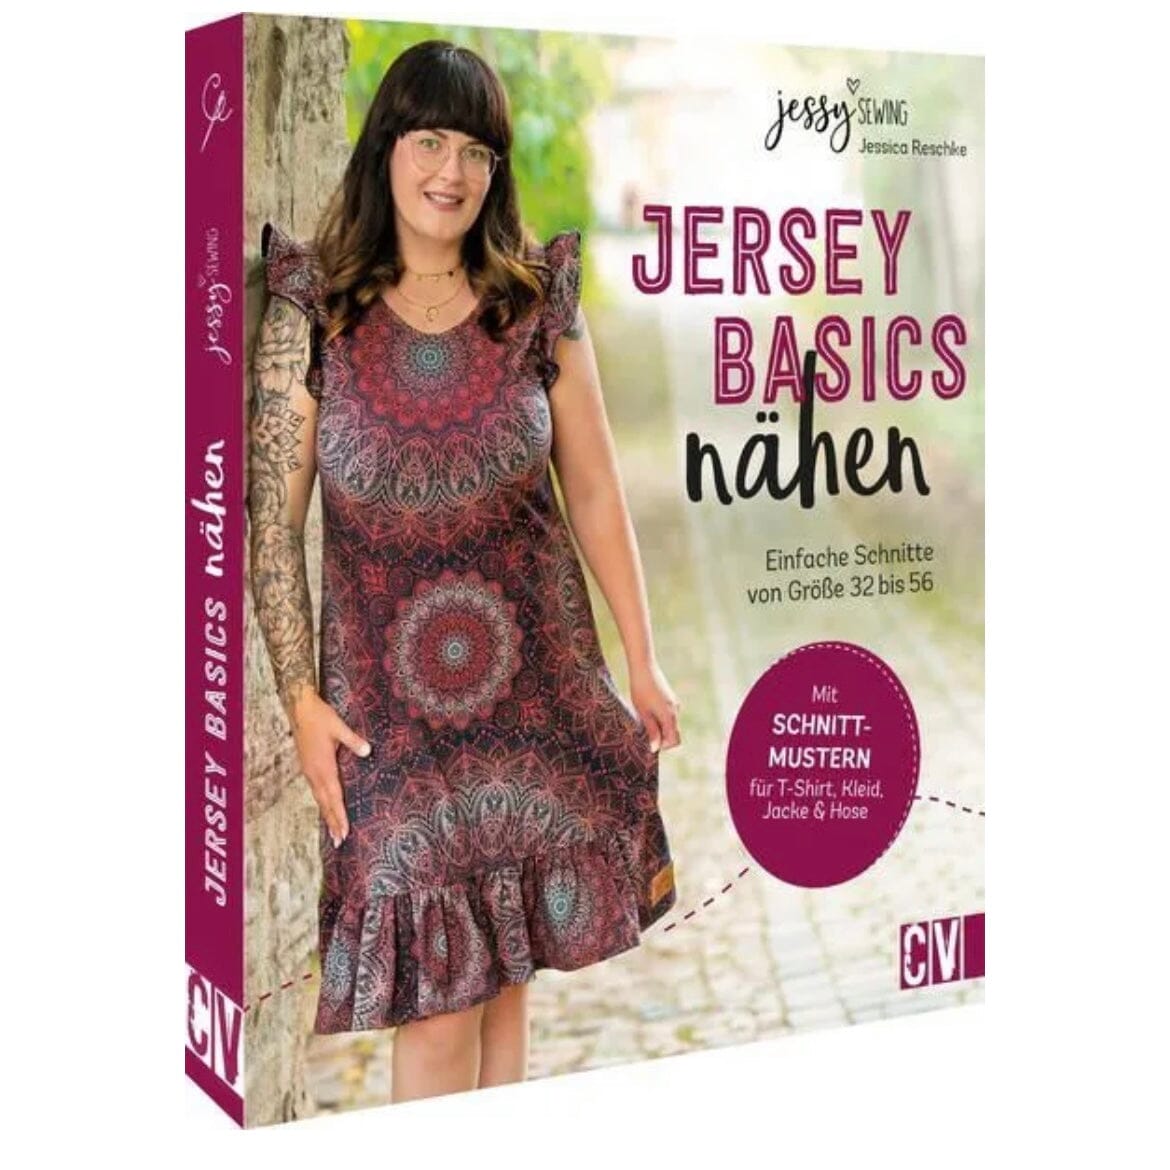 Jersey Basics Nähen einfache Schnitte von Gr.32-56 by Jessica Reschke / Jessy Sewing Stück poshpinks